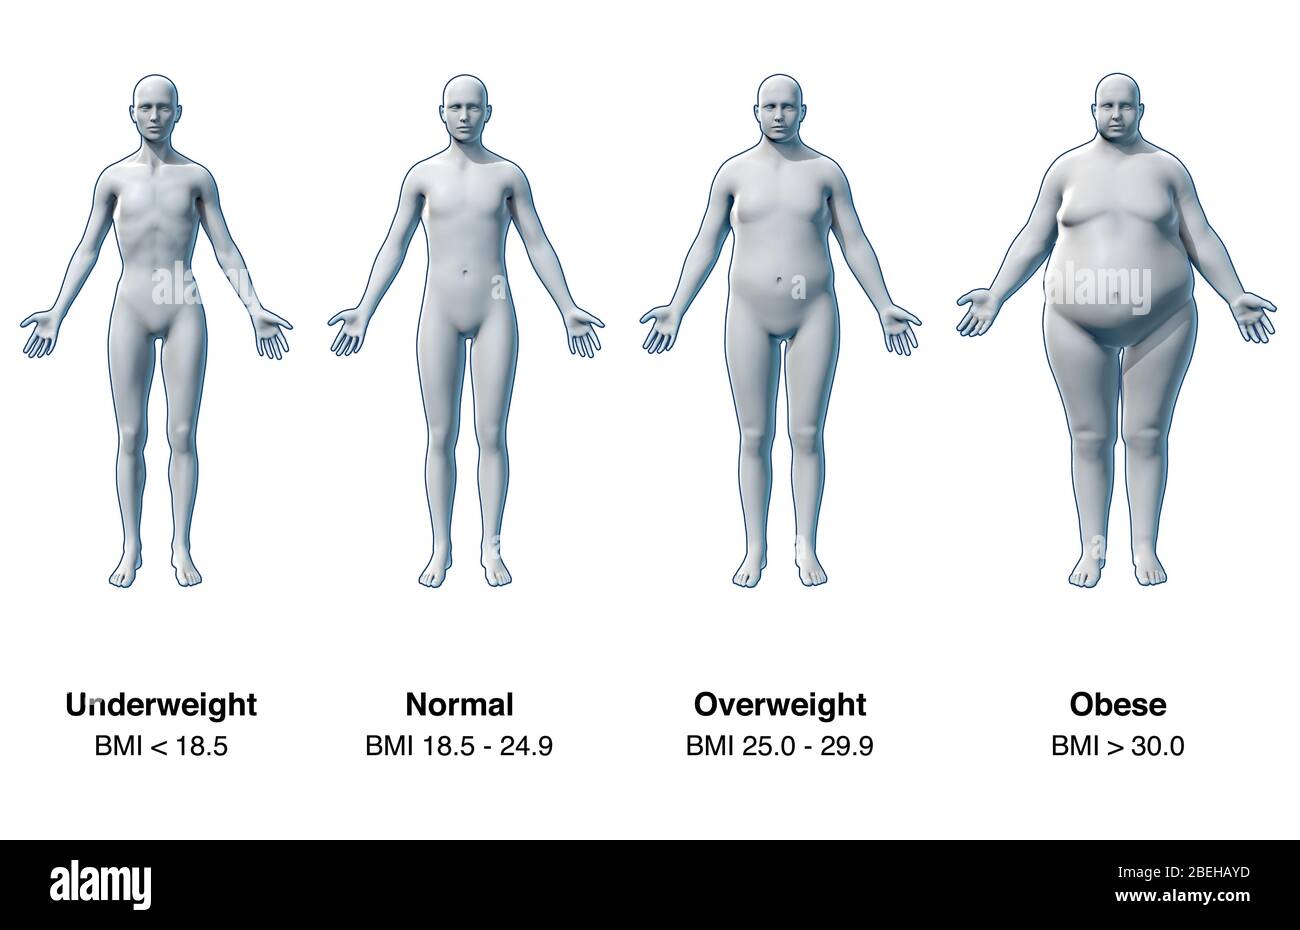 El índice de masa corporal (IMC) es una medida utilizada para cuantificar la masa tisular en función del peso y la altura de un individuo. El IMC se diseñó para clasificar a una persona como infraponderada, peso normal, sobrepeso u obesidad, con el fin de determinar posibles riesgos para la salud, como la malnutrición o los trastornos alimentarios. Sin embargo, el IMC de una persona no refleja exactamente el porcentaje de grasa corporal. Por ejemplo, los atletas profesionales tienen una alta relación músculo-grasa, lo que resulta en un IMC muy alto. Foto de stock